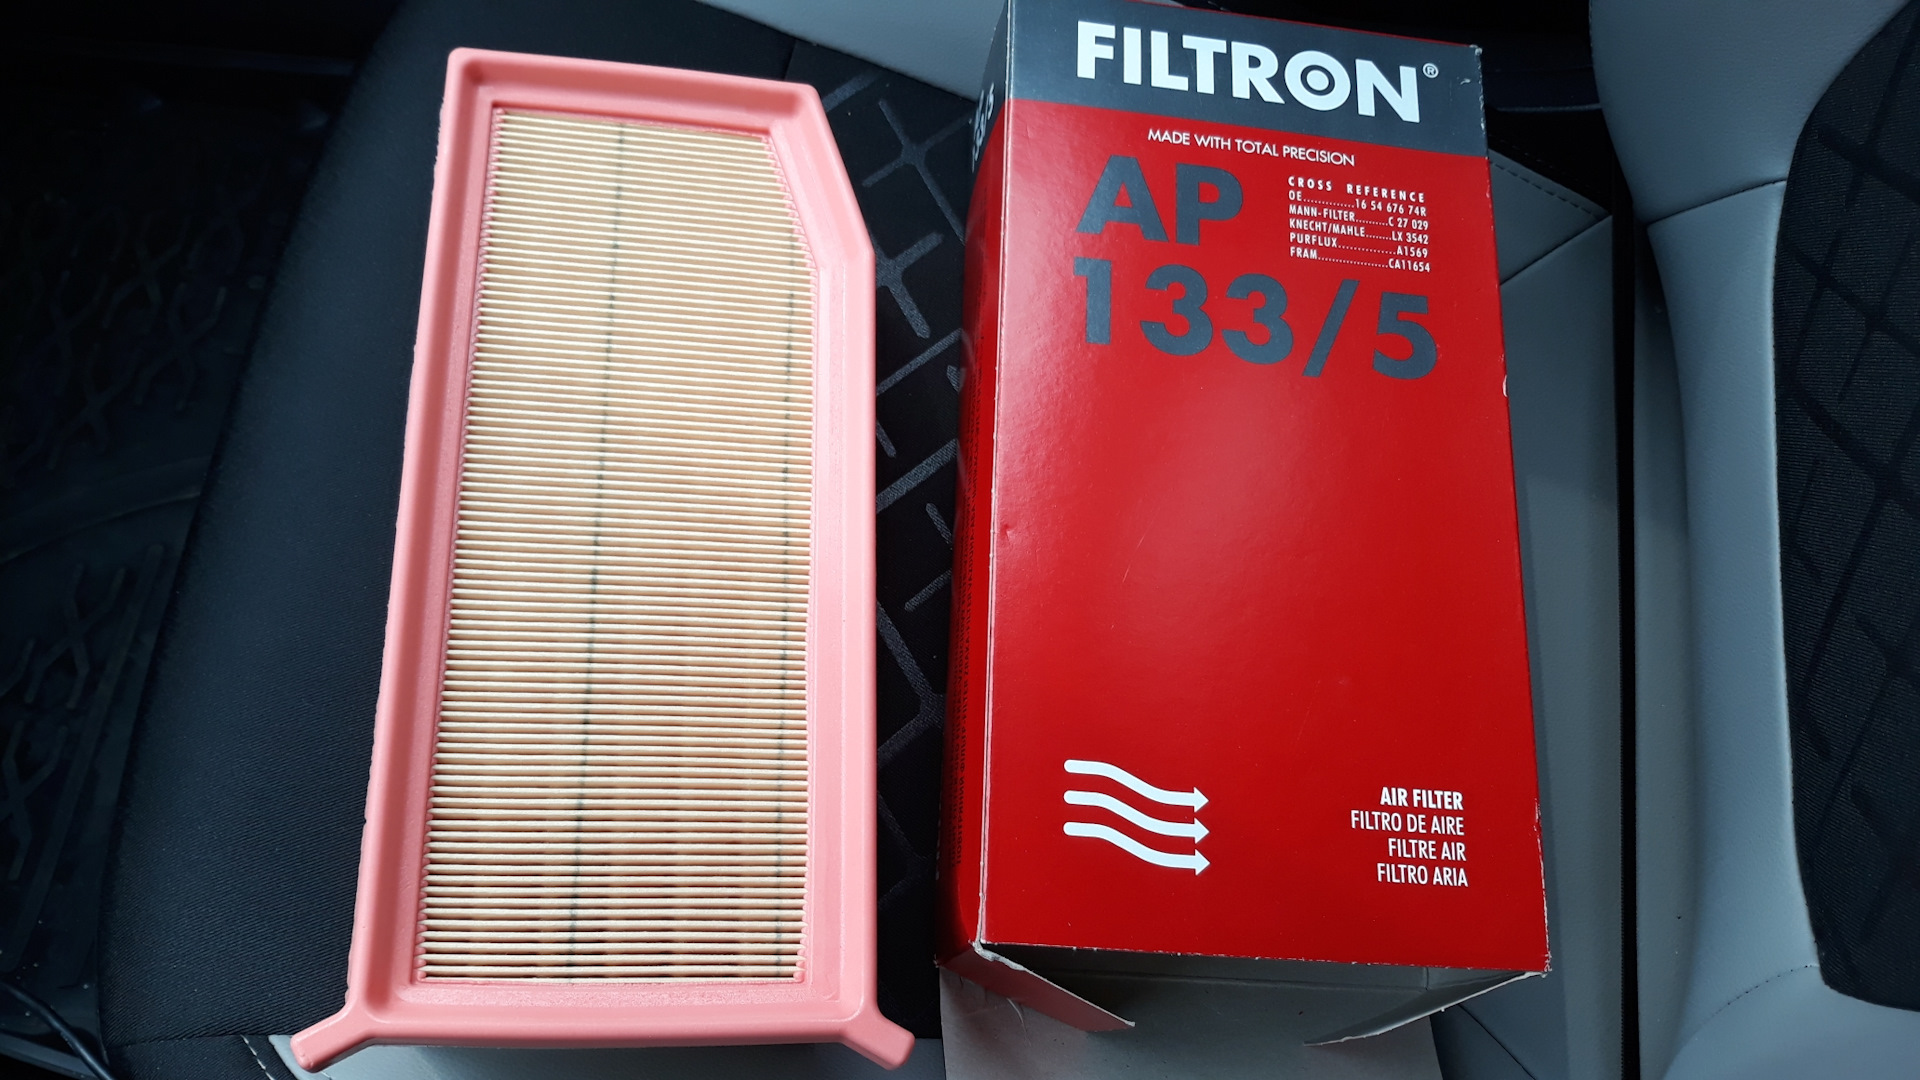 Ap фильтр воздушный. FILTRON AP 133/5 фильтр воздушный.